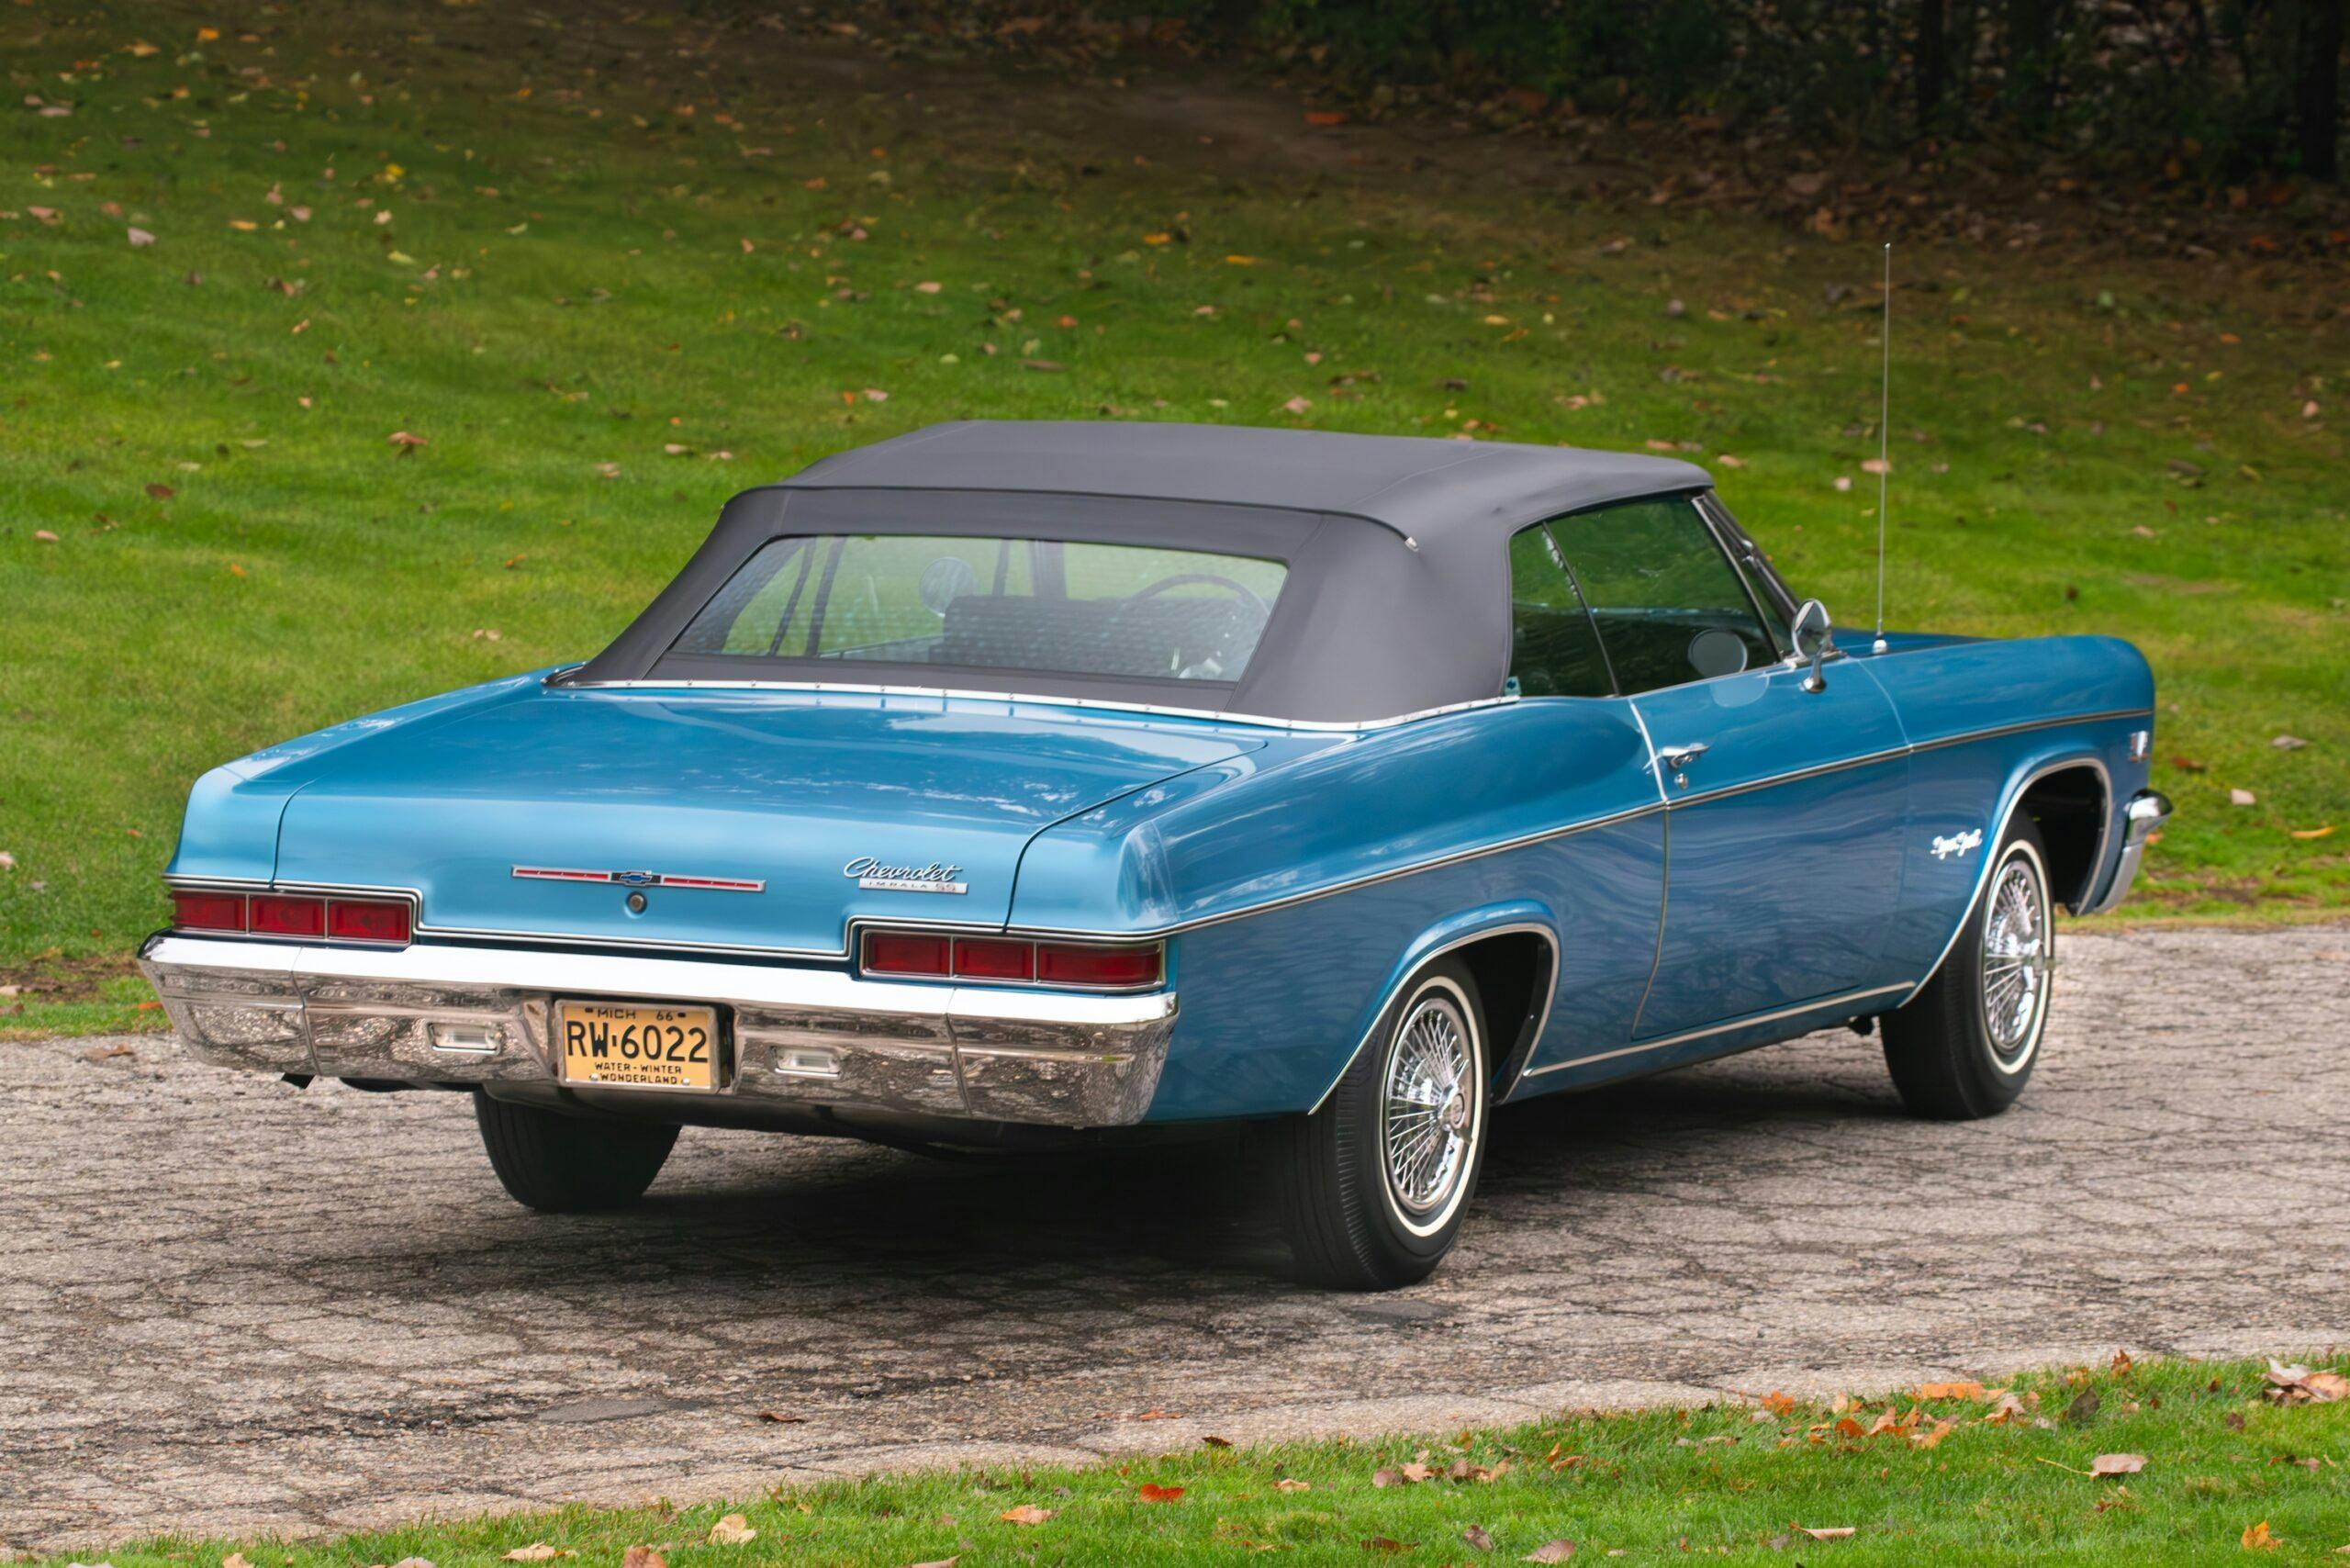 1966 Impala Super Sport convertible rear three quarter